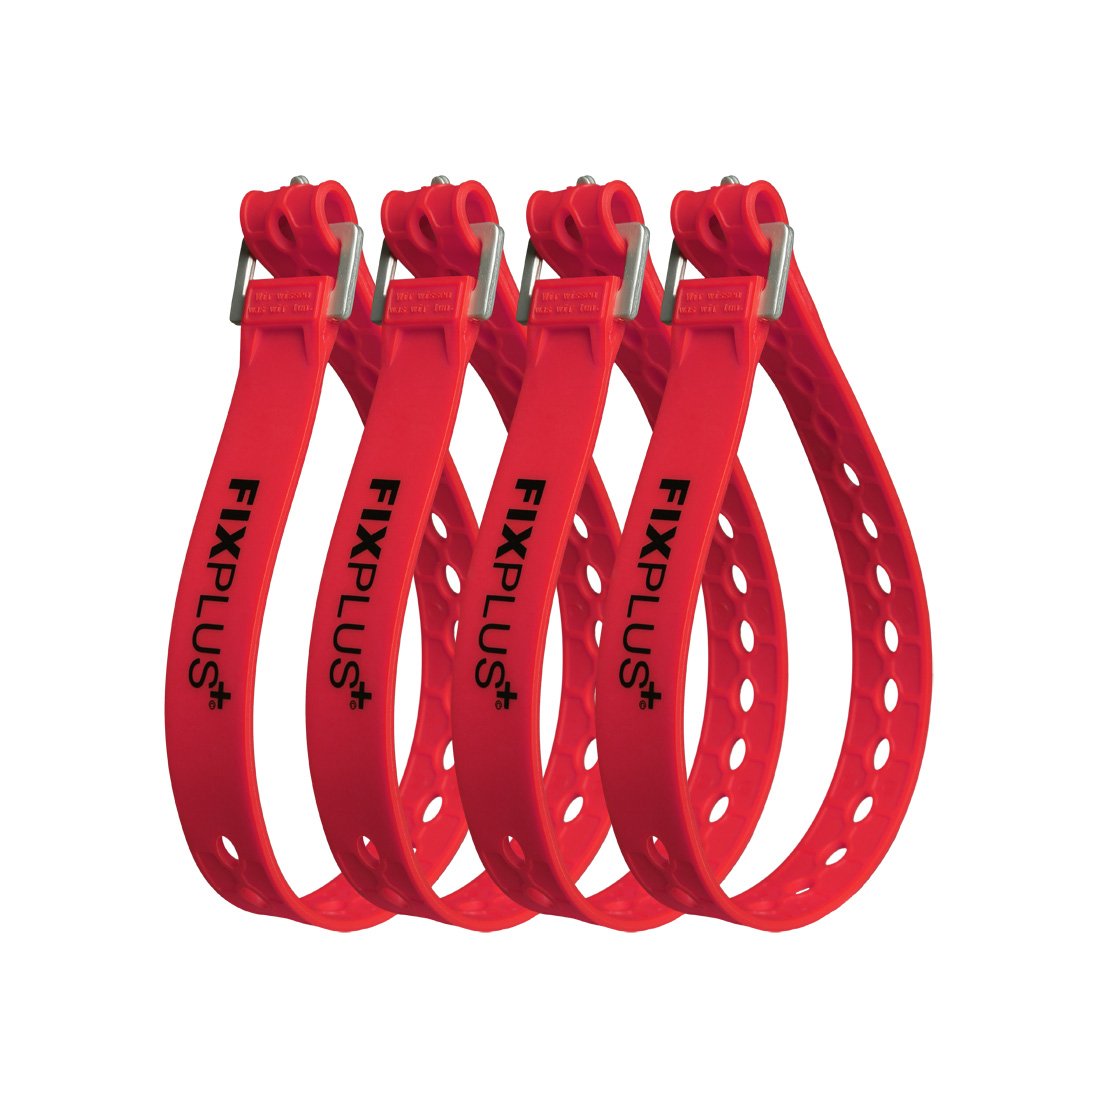 Fixplus Strap 4er-Pack - Zurrgurt Zum Sichern, Befestigen, Bündeln und Festzurren, aus Spezialkunststoff mit Aluminiumschnalle 46cm x 2,4cm (rot)